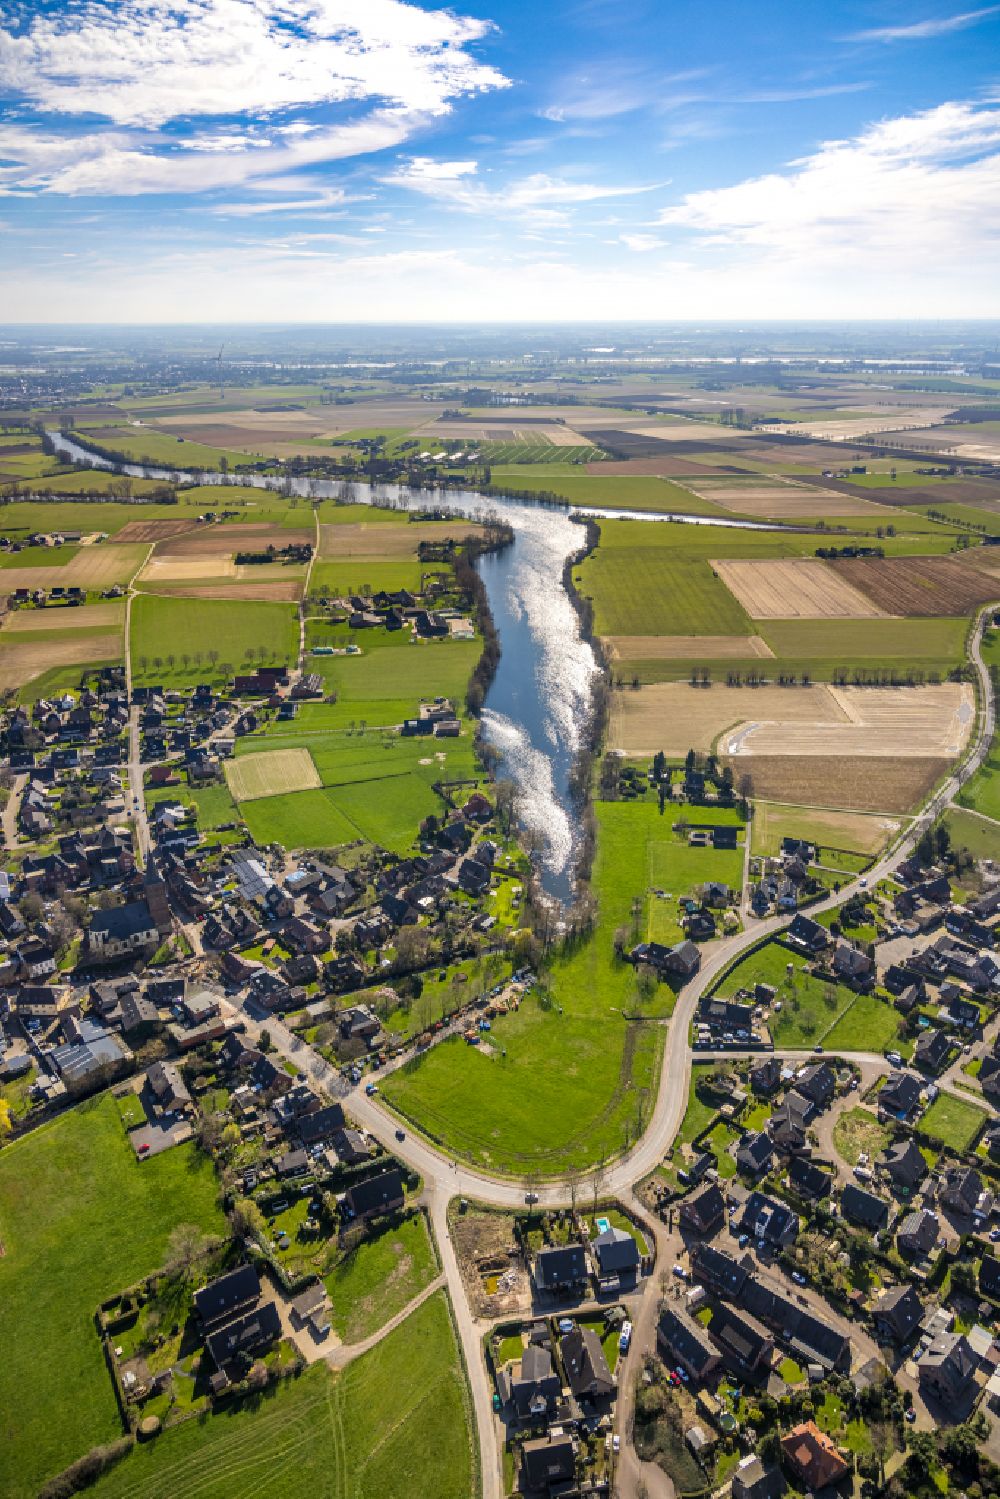 Millingen von oben - Ortskern am Uferbereich Landwehr - Millinger See in Millingen im Bundesland Nordrhein-Westfalen, Deutschland